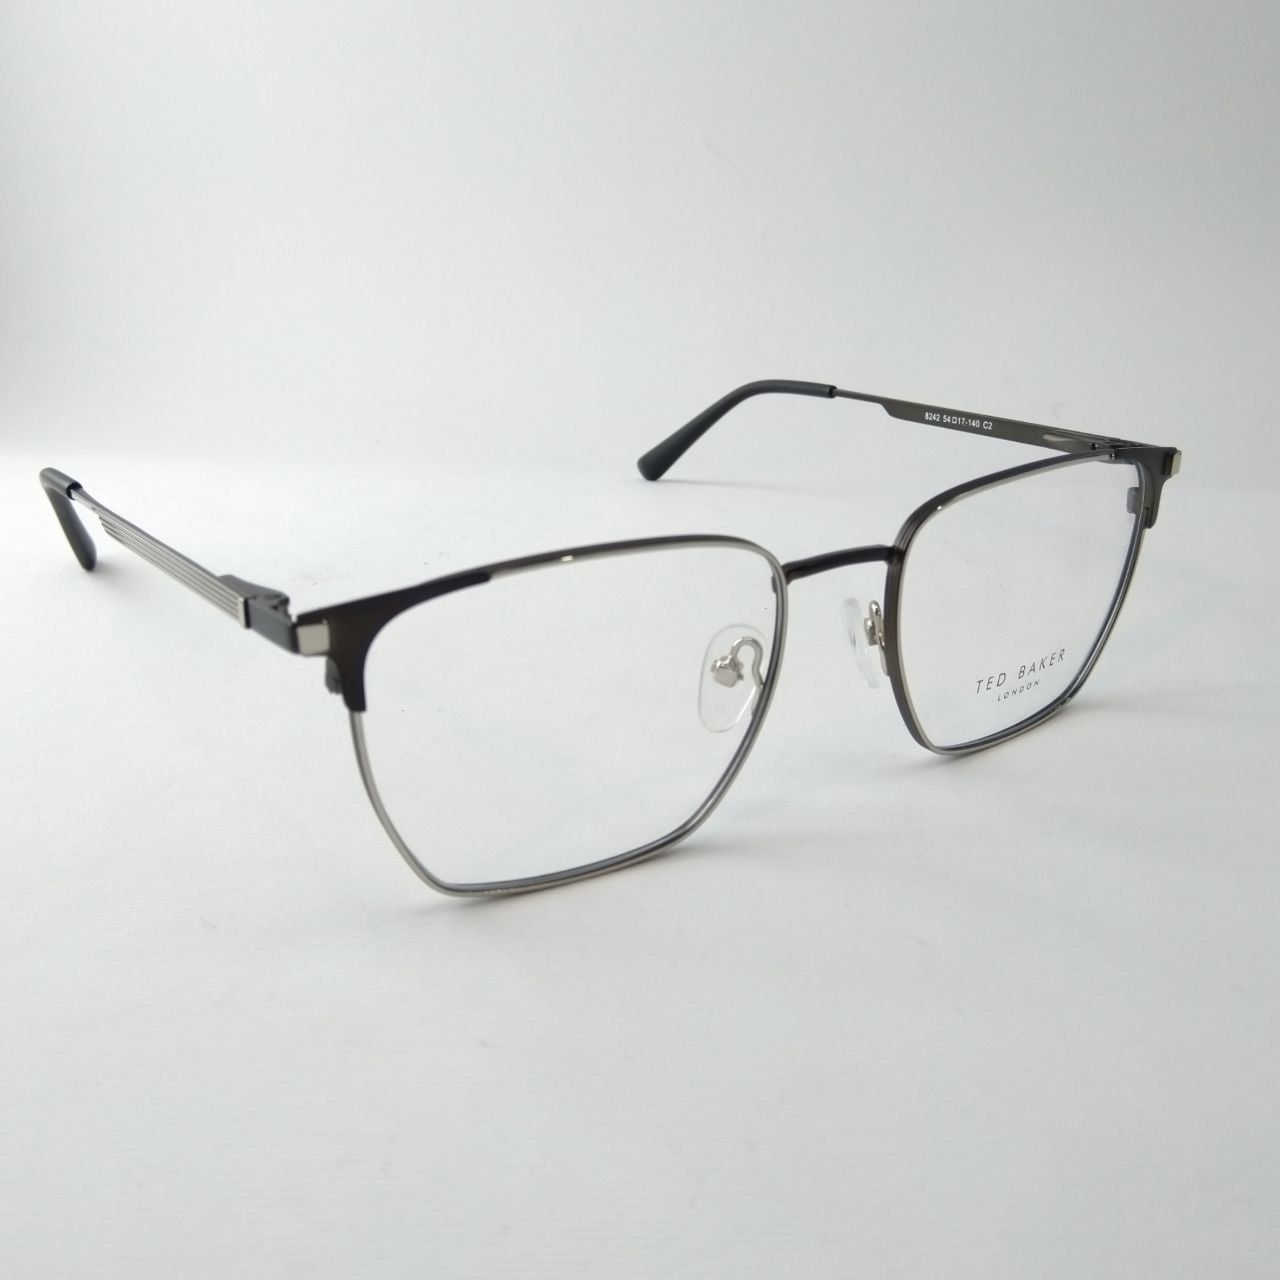 فریم عینک طبی مردانه تد بیکر مدل 8242 -  - 2